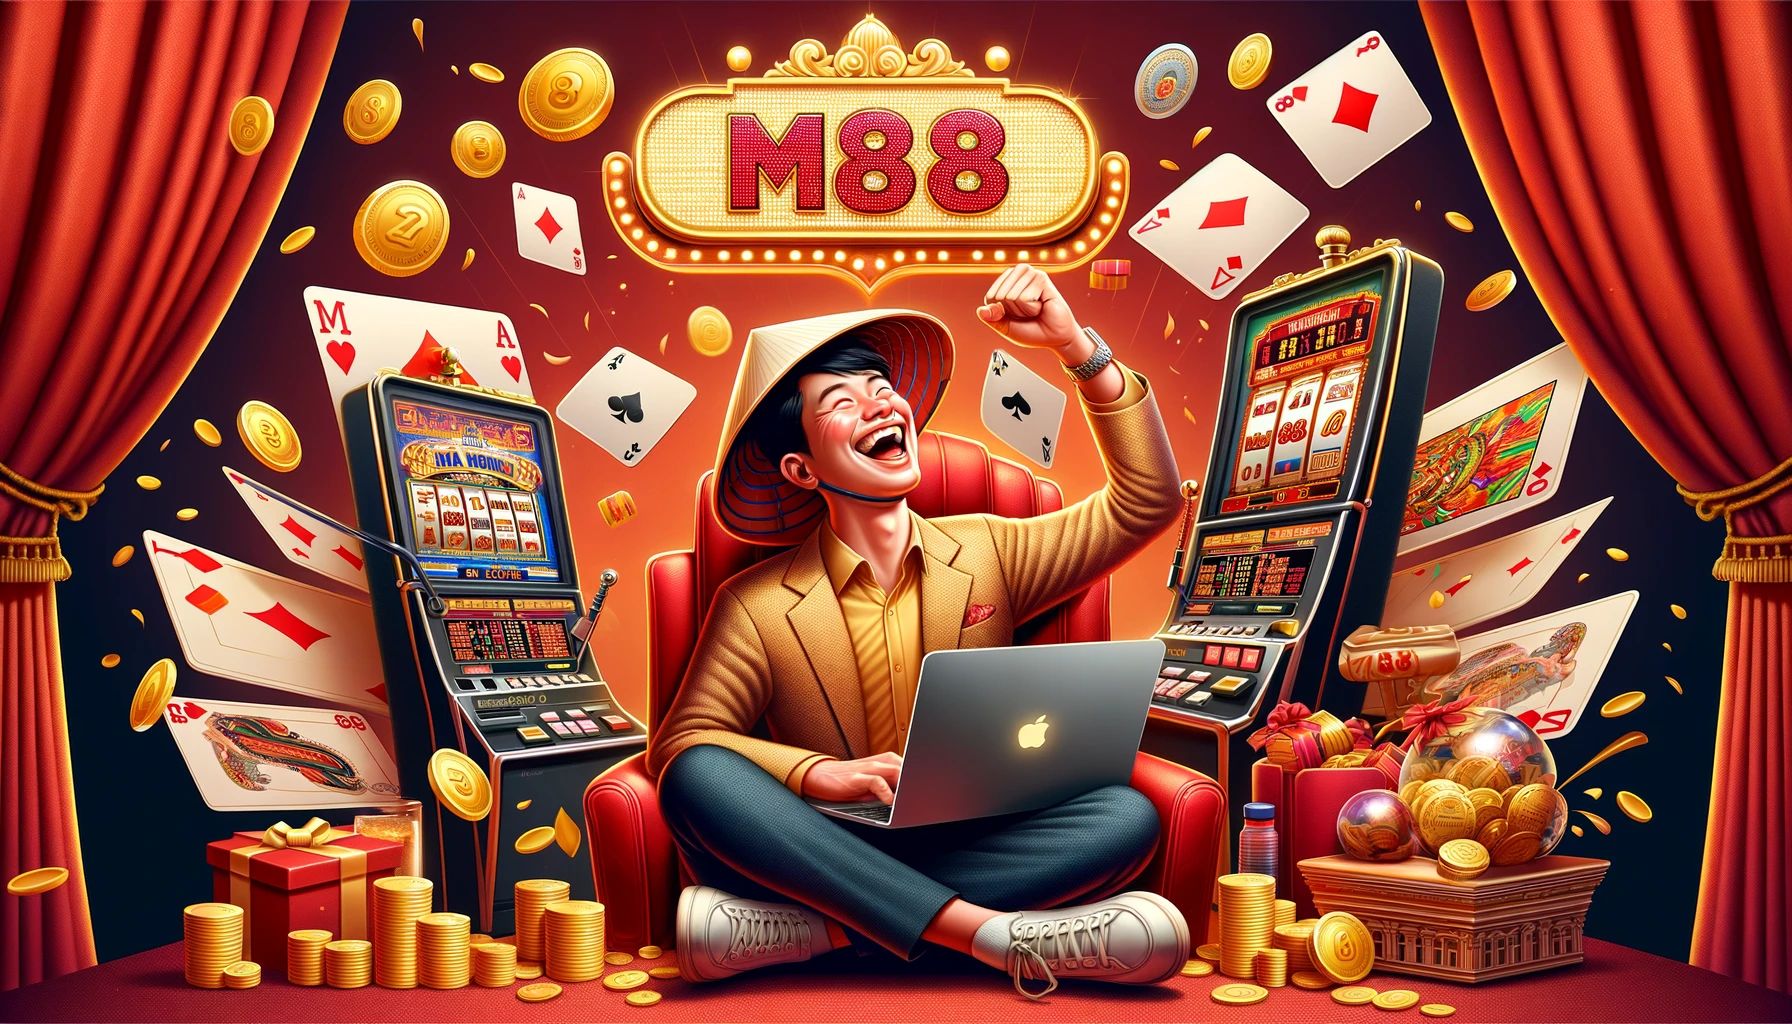 Nhà cái Casino Online - M88